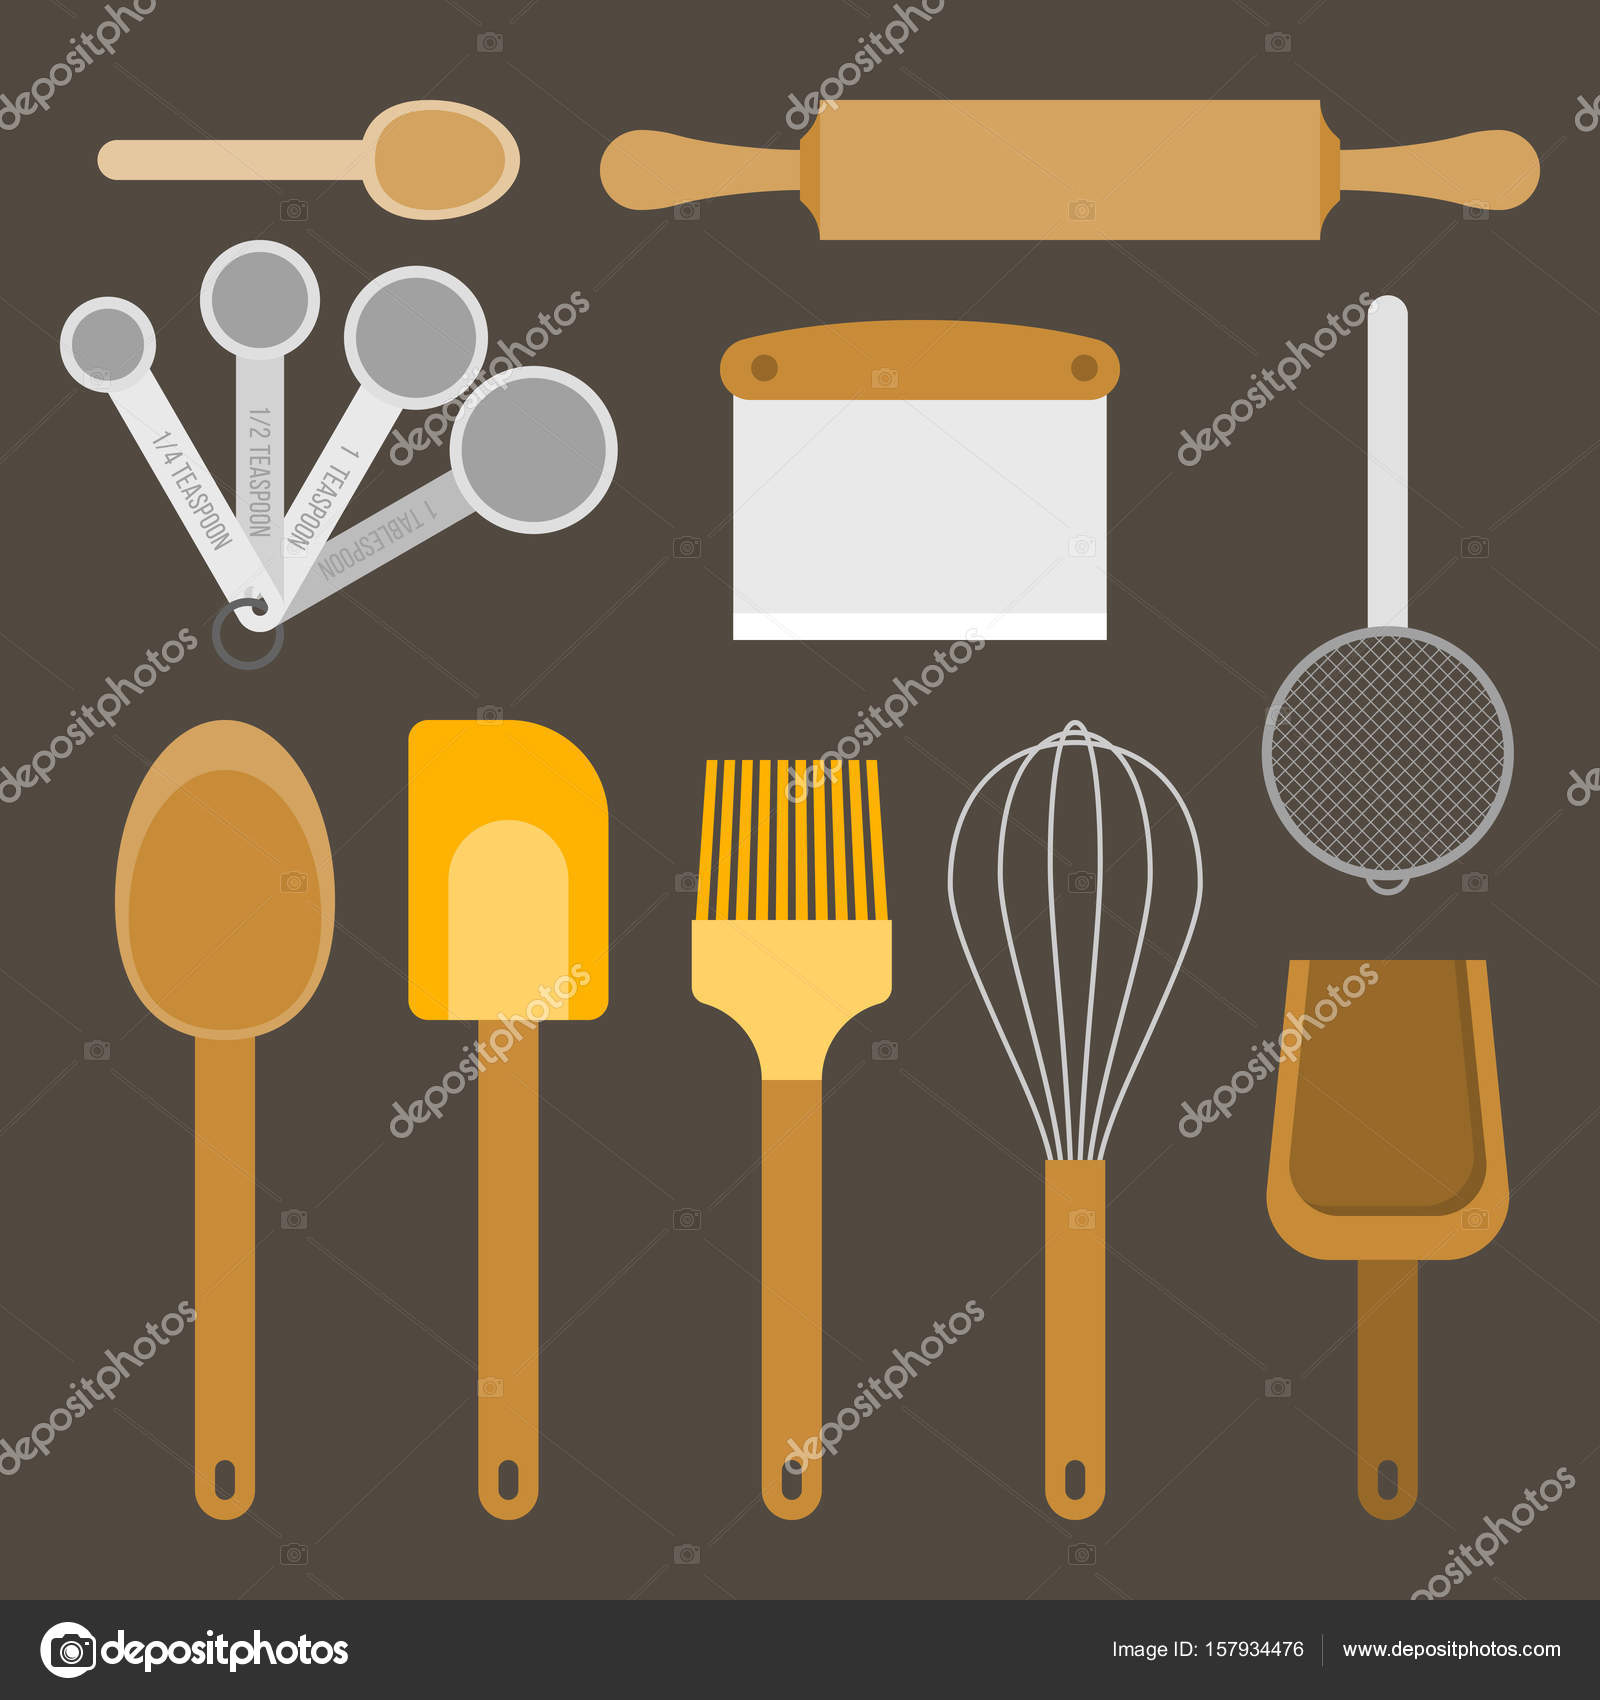 https://st3.depositphotos.com/7646640/15793/v/1600/depositphotos_157934476-stock-illustration-bakery-equipment-and-utensils-such.jpg